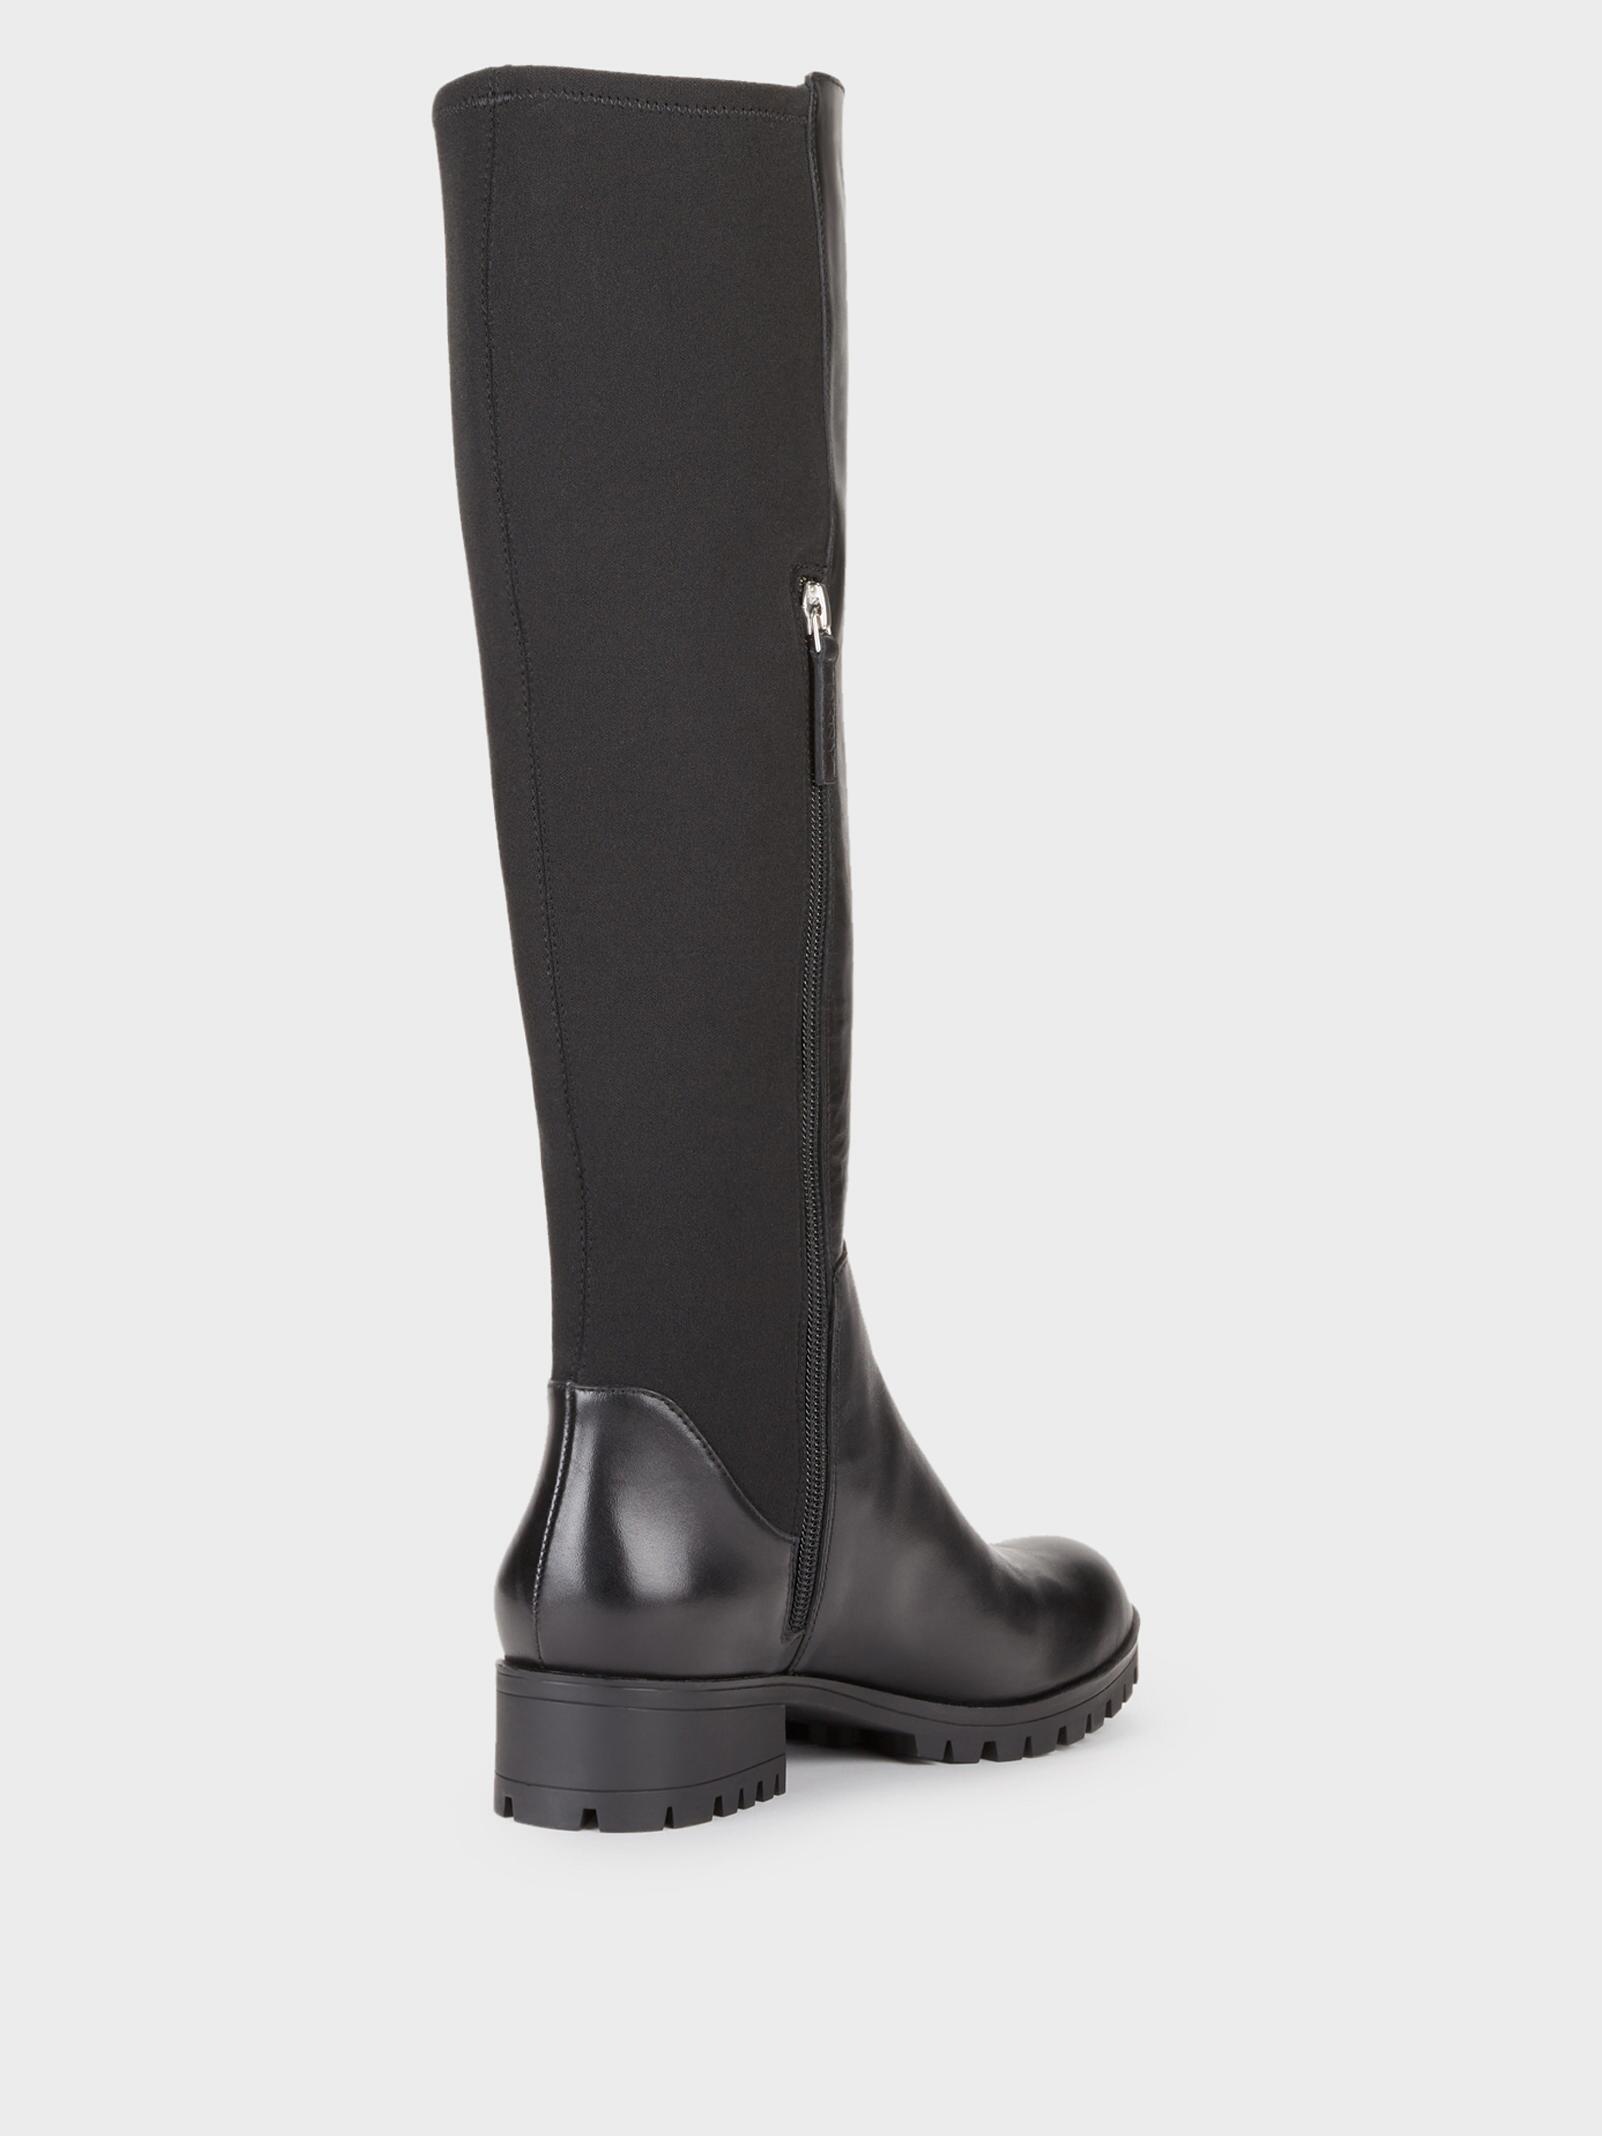 DKNY Merona Waterproof Leather Knee High Boot in Black - Lyst